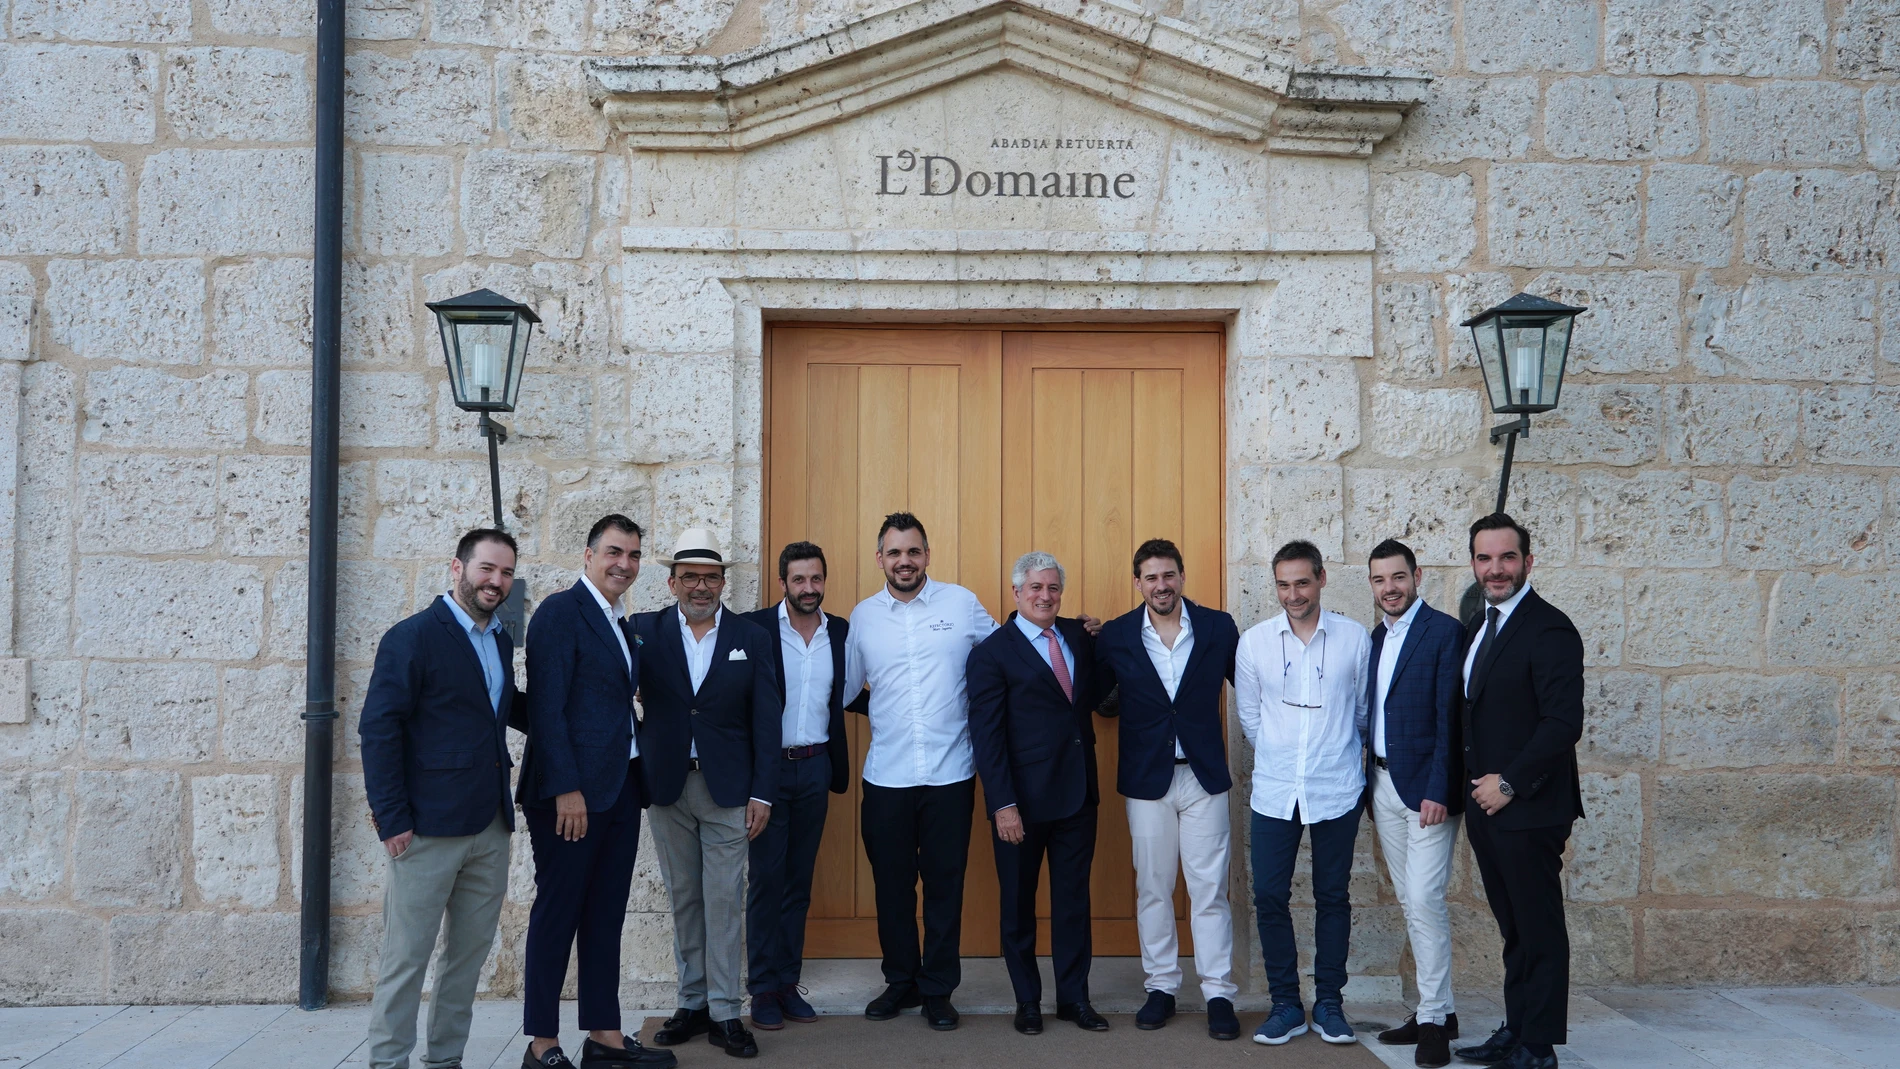 Abadía Retuerta LeDomaine celebra su X aniversario con una cena especial que reúne a varios cocineros con estrella Michelin y autoridades autonómicas, personalidades del sector gastronómico y del turístico nacional